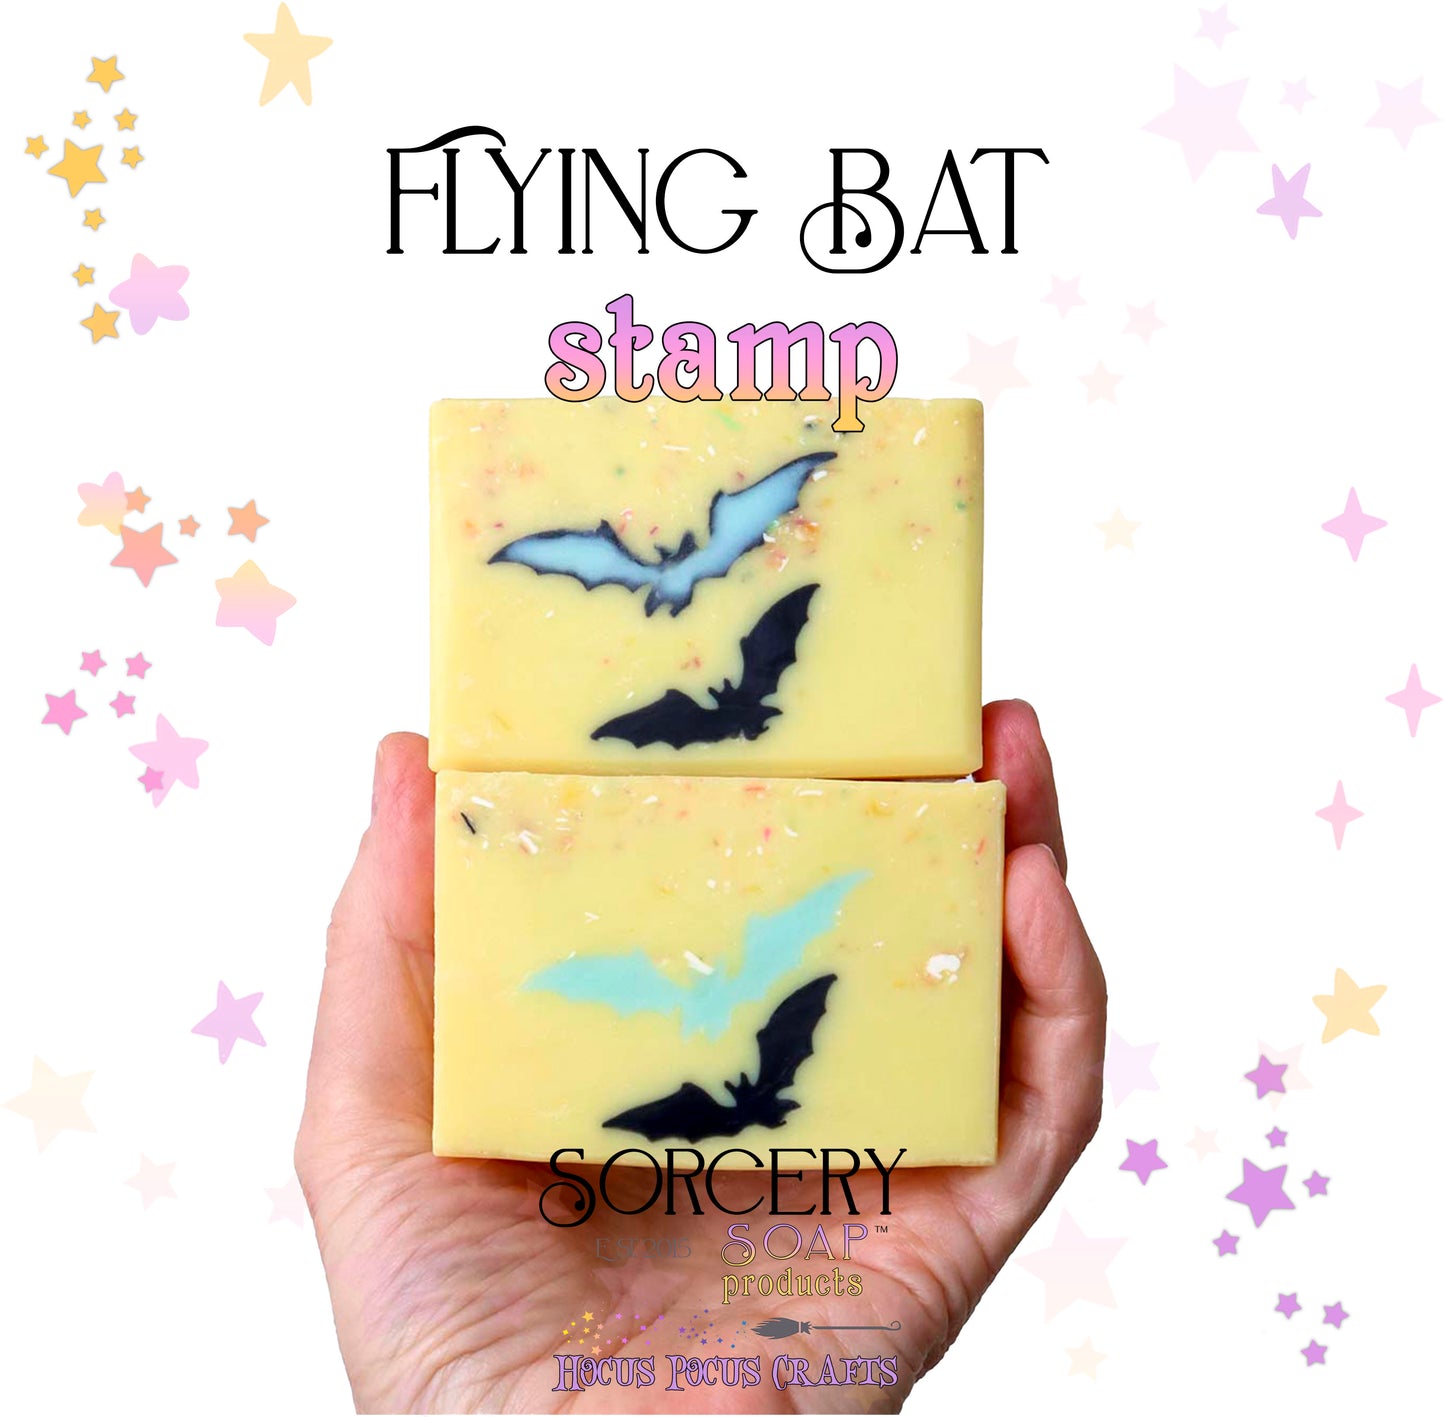 Flying Bat Soap Stamp